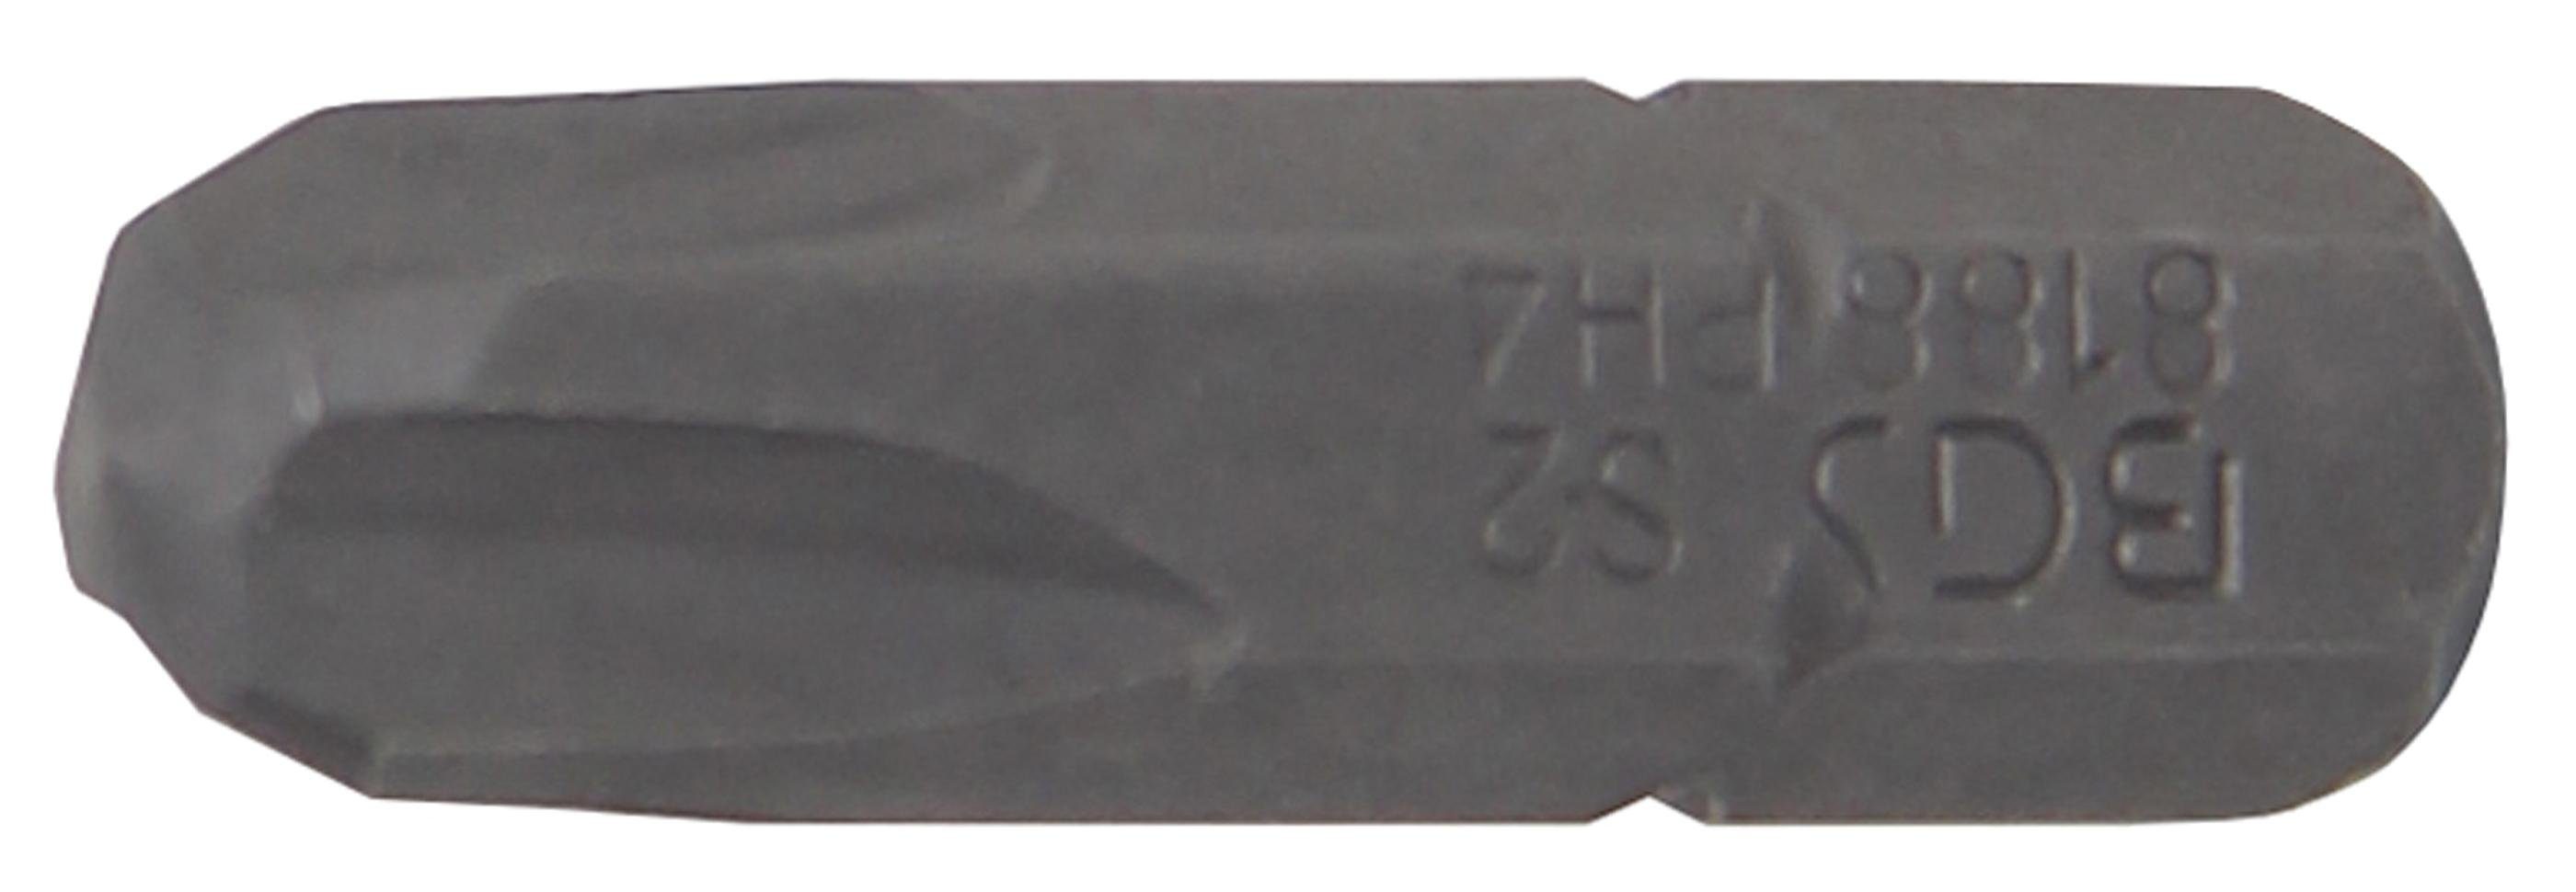 BGS technic Bit-Schraubendreher Bit, Antrieb Außensechskant 6,3 mm (1/4), Kreuzschlitz PH4